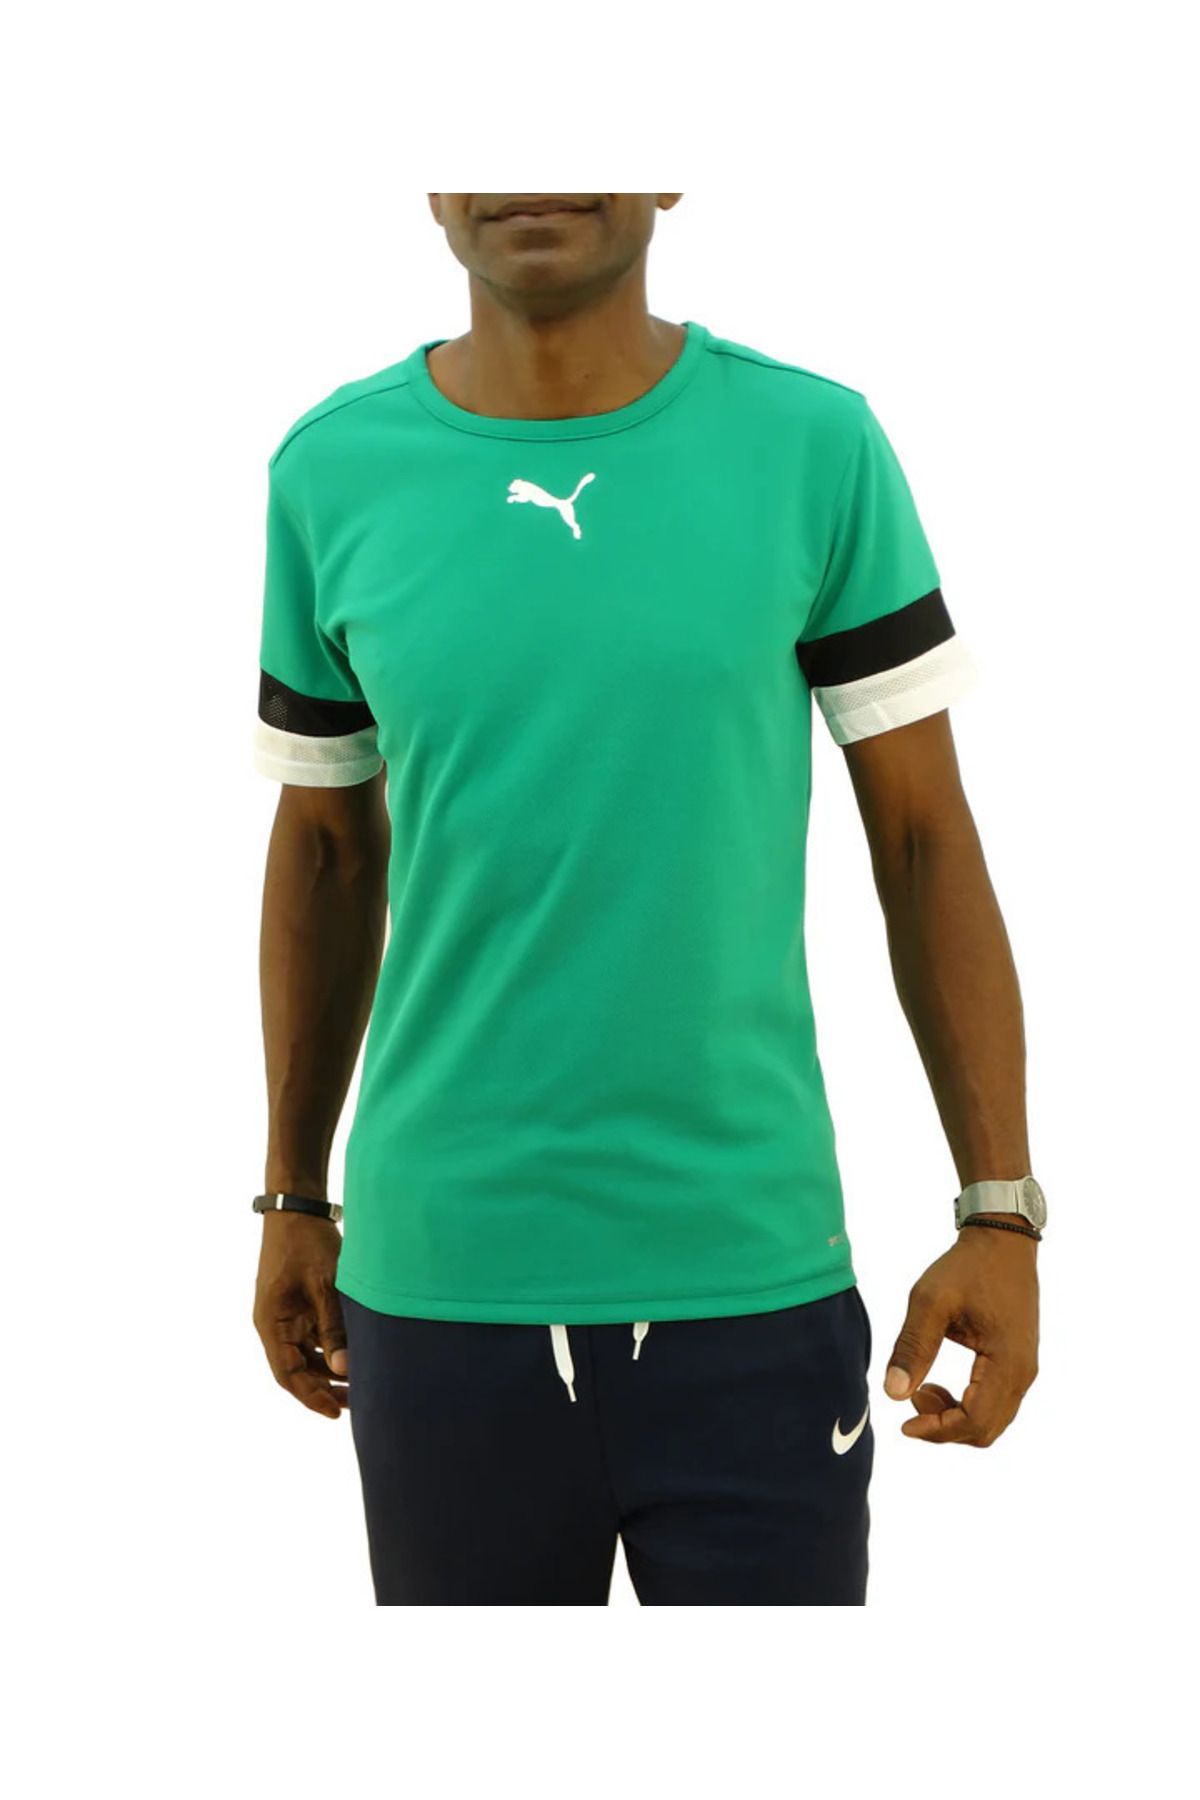 Puma Teamrise Jersey Erkek Tişört Günlük Kullanıma ve Antrenmana Uygun T-shirt